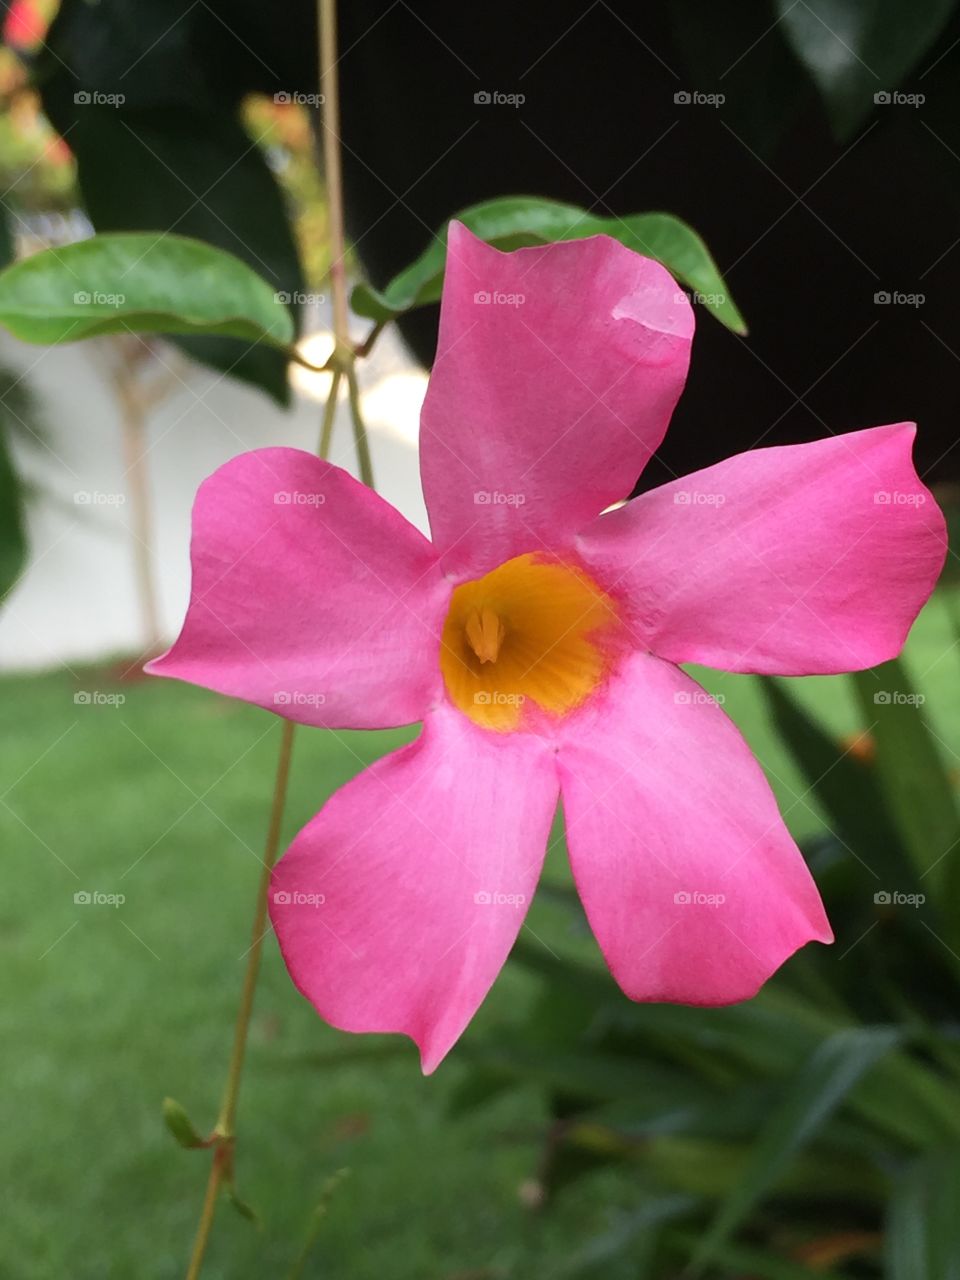 Beautiful pink flower. Foto taken in my garden 